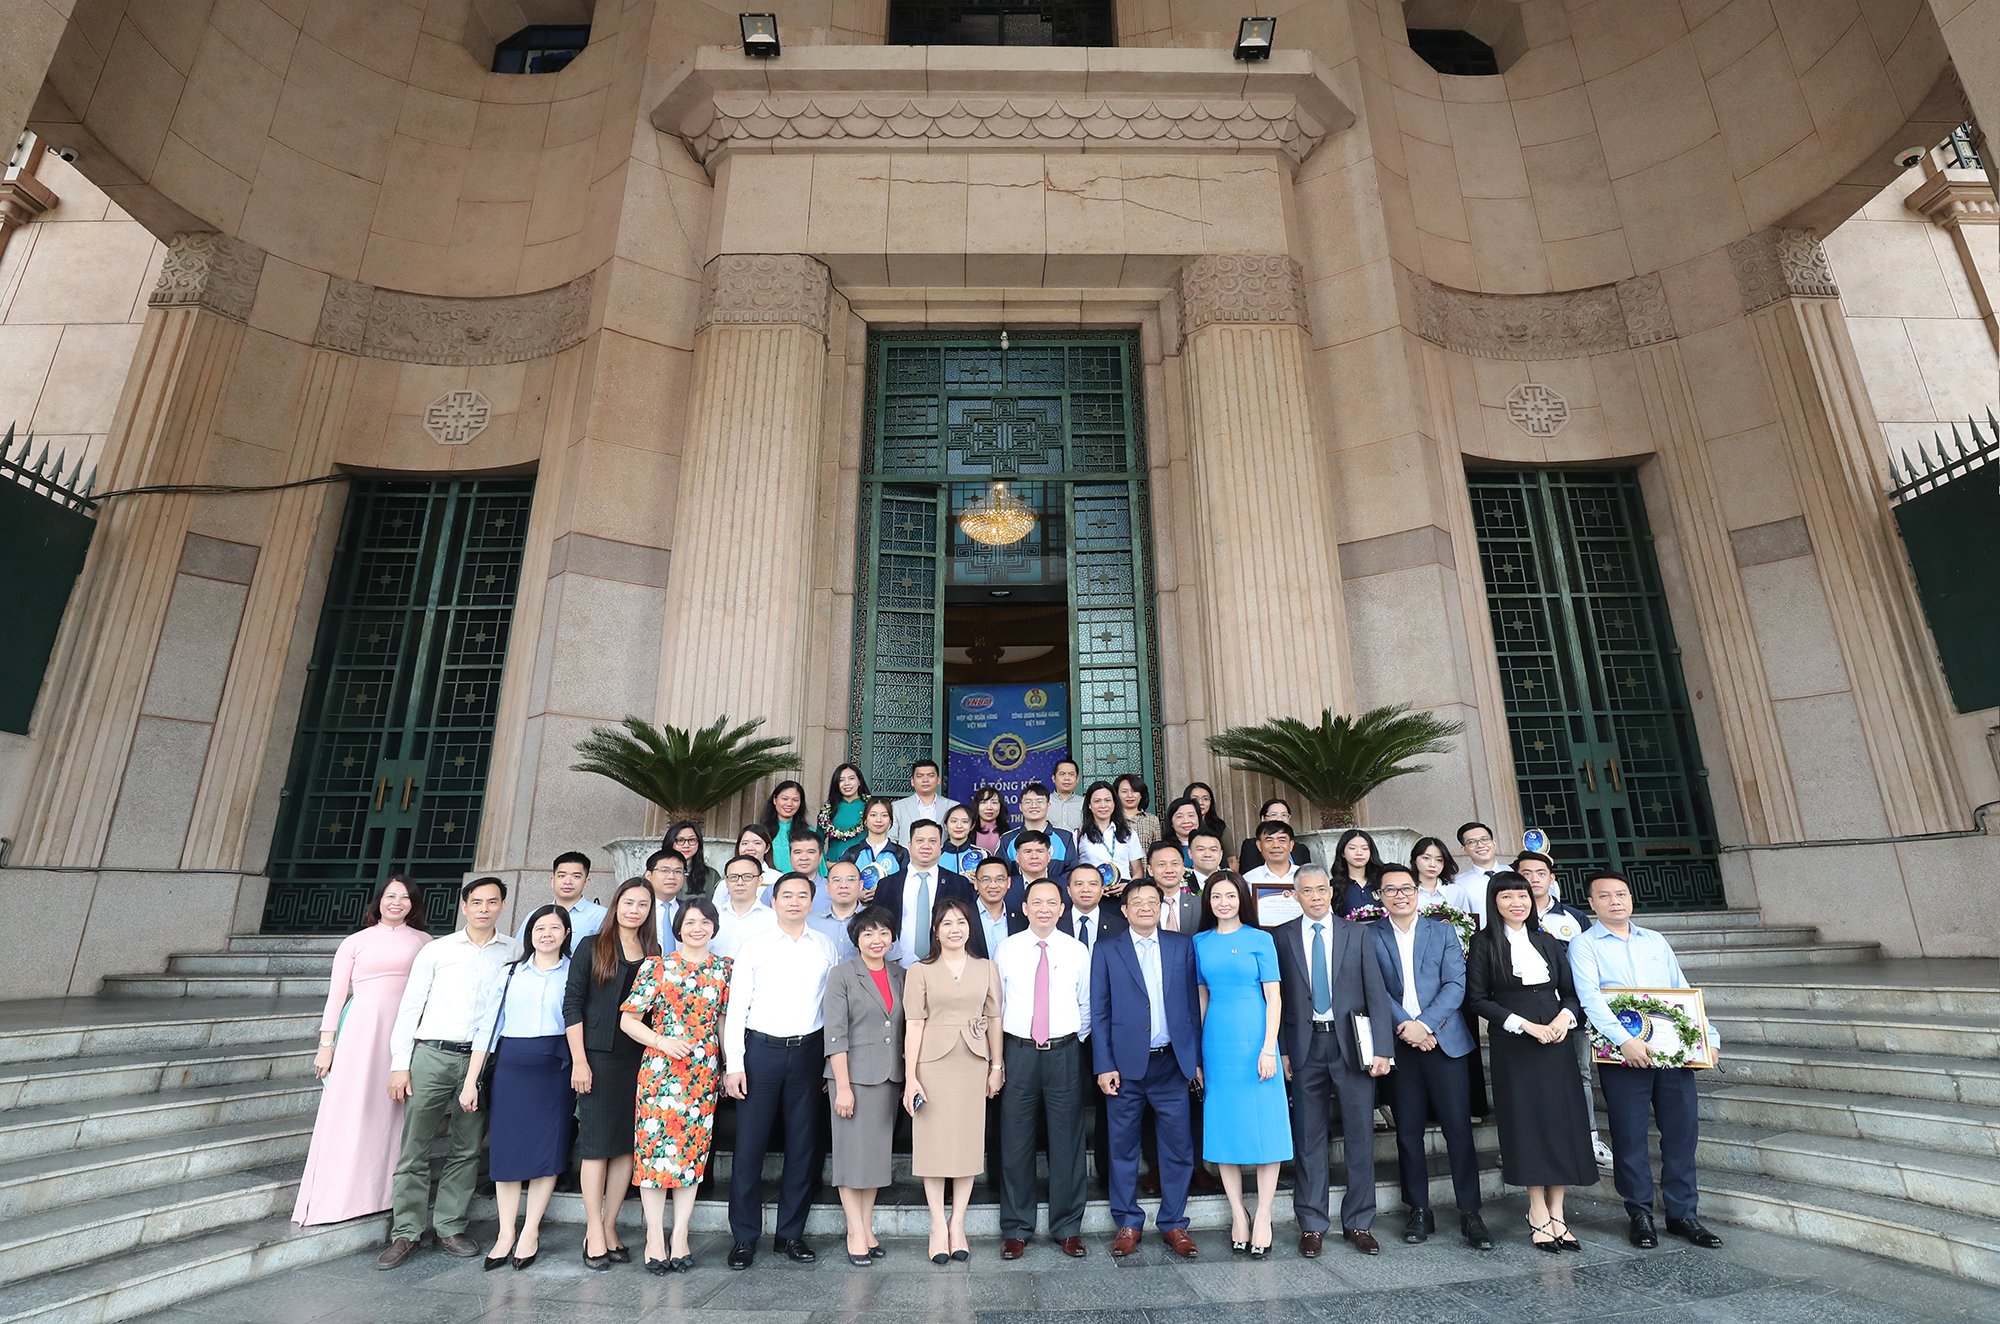 Ban lãnh đạo Ngân hàng Nhà nước Việt Nam, Hiệp hội Ngân hàng Việt Nam, các Tổ chức tín dụng chụp ảnh lưu niệm cùng các thí sinh tại Ngân hàng Nhà nước Việt Nam (49 Lý Thái Tổ, Hà Nội)